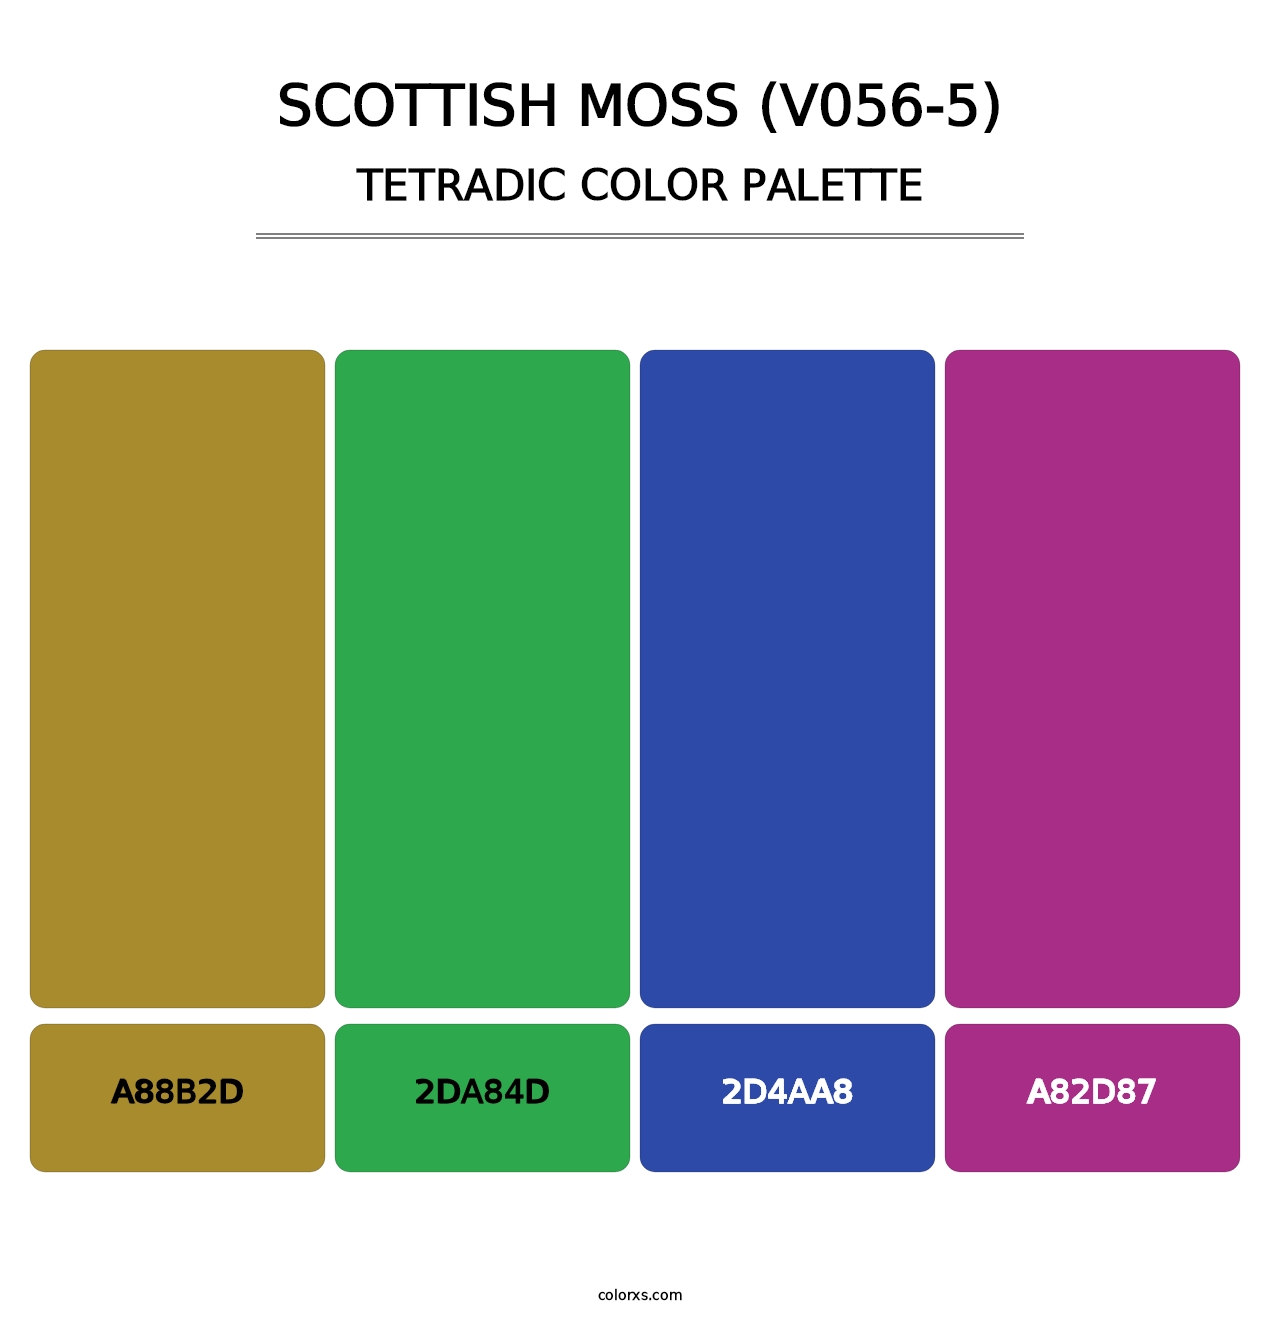 Scottish Moss (V056-5) - Tetradic Color Palette